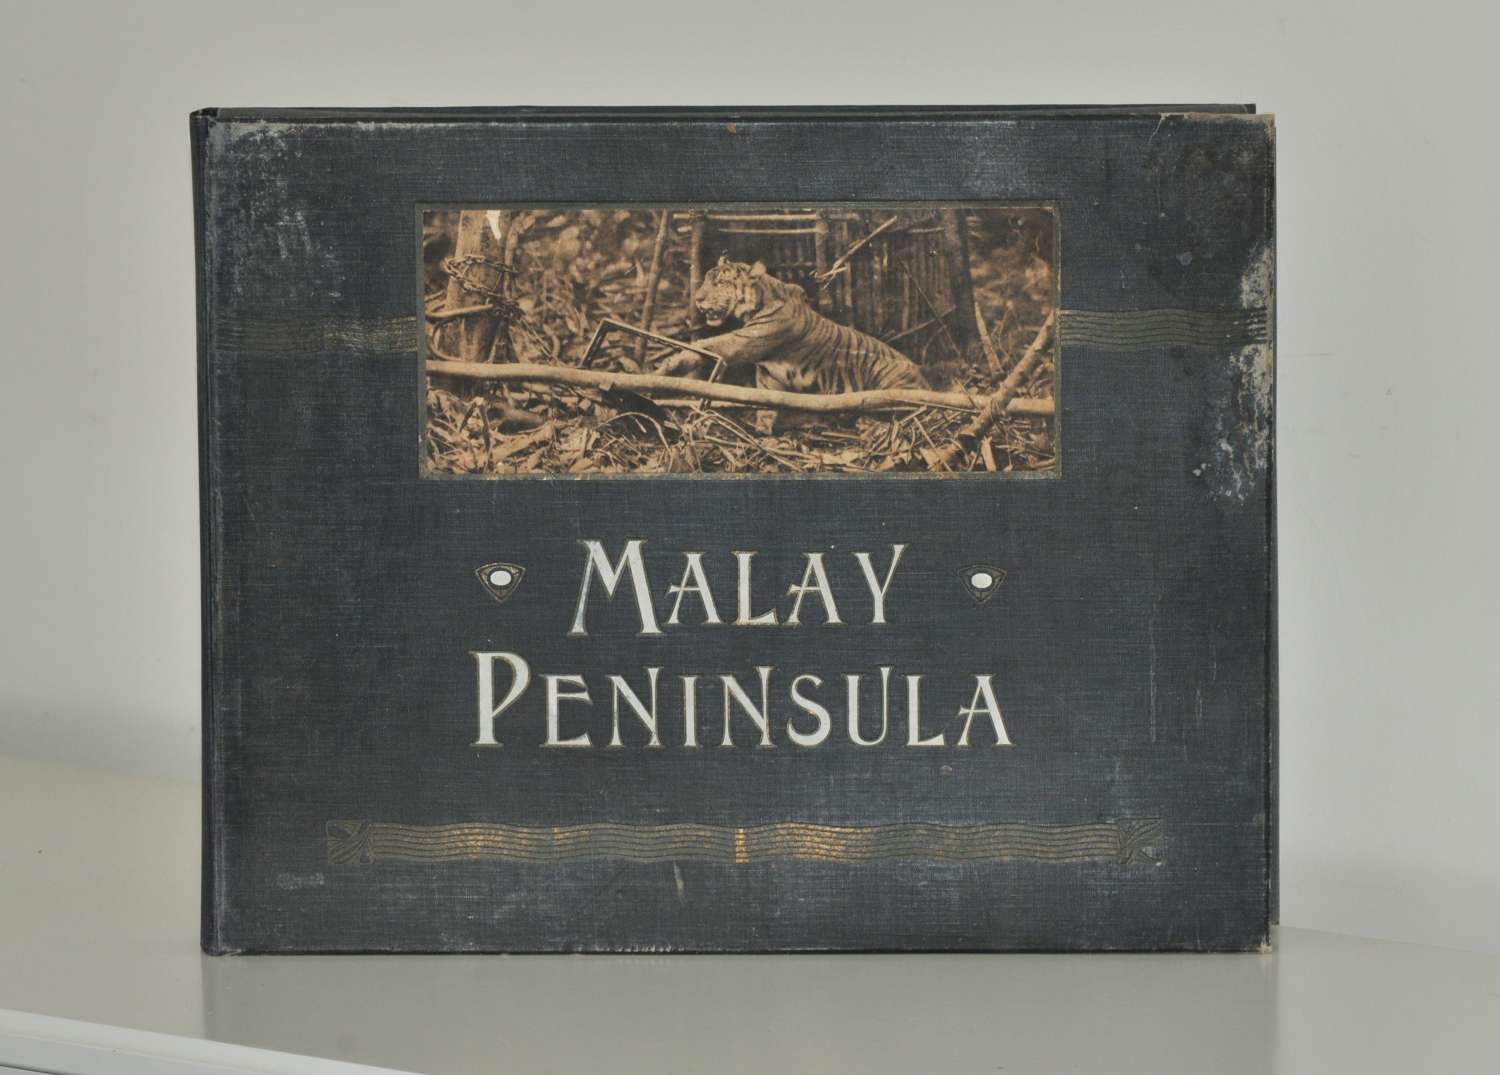 Original Photographs of Malay Peninsular.